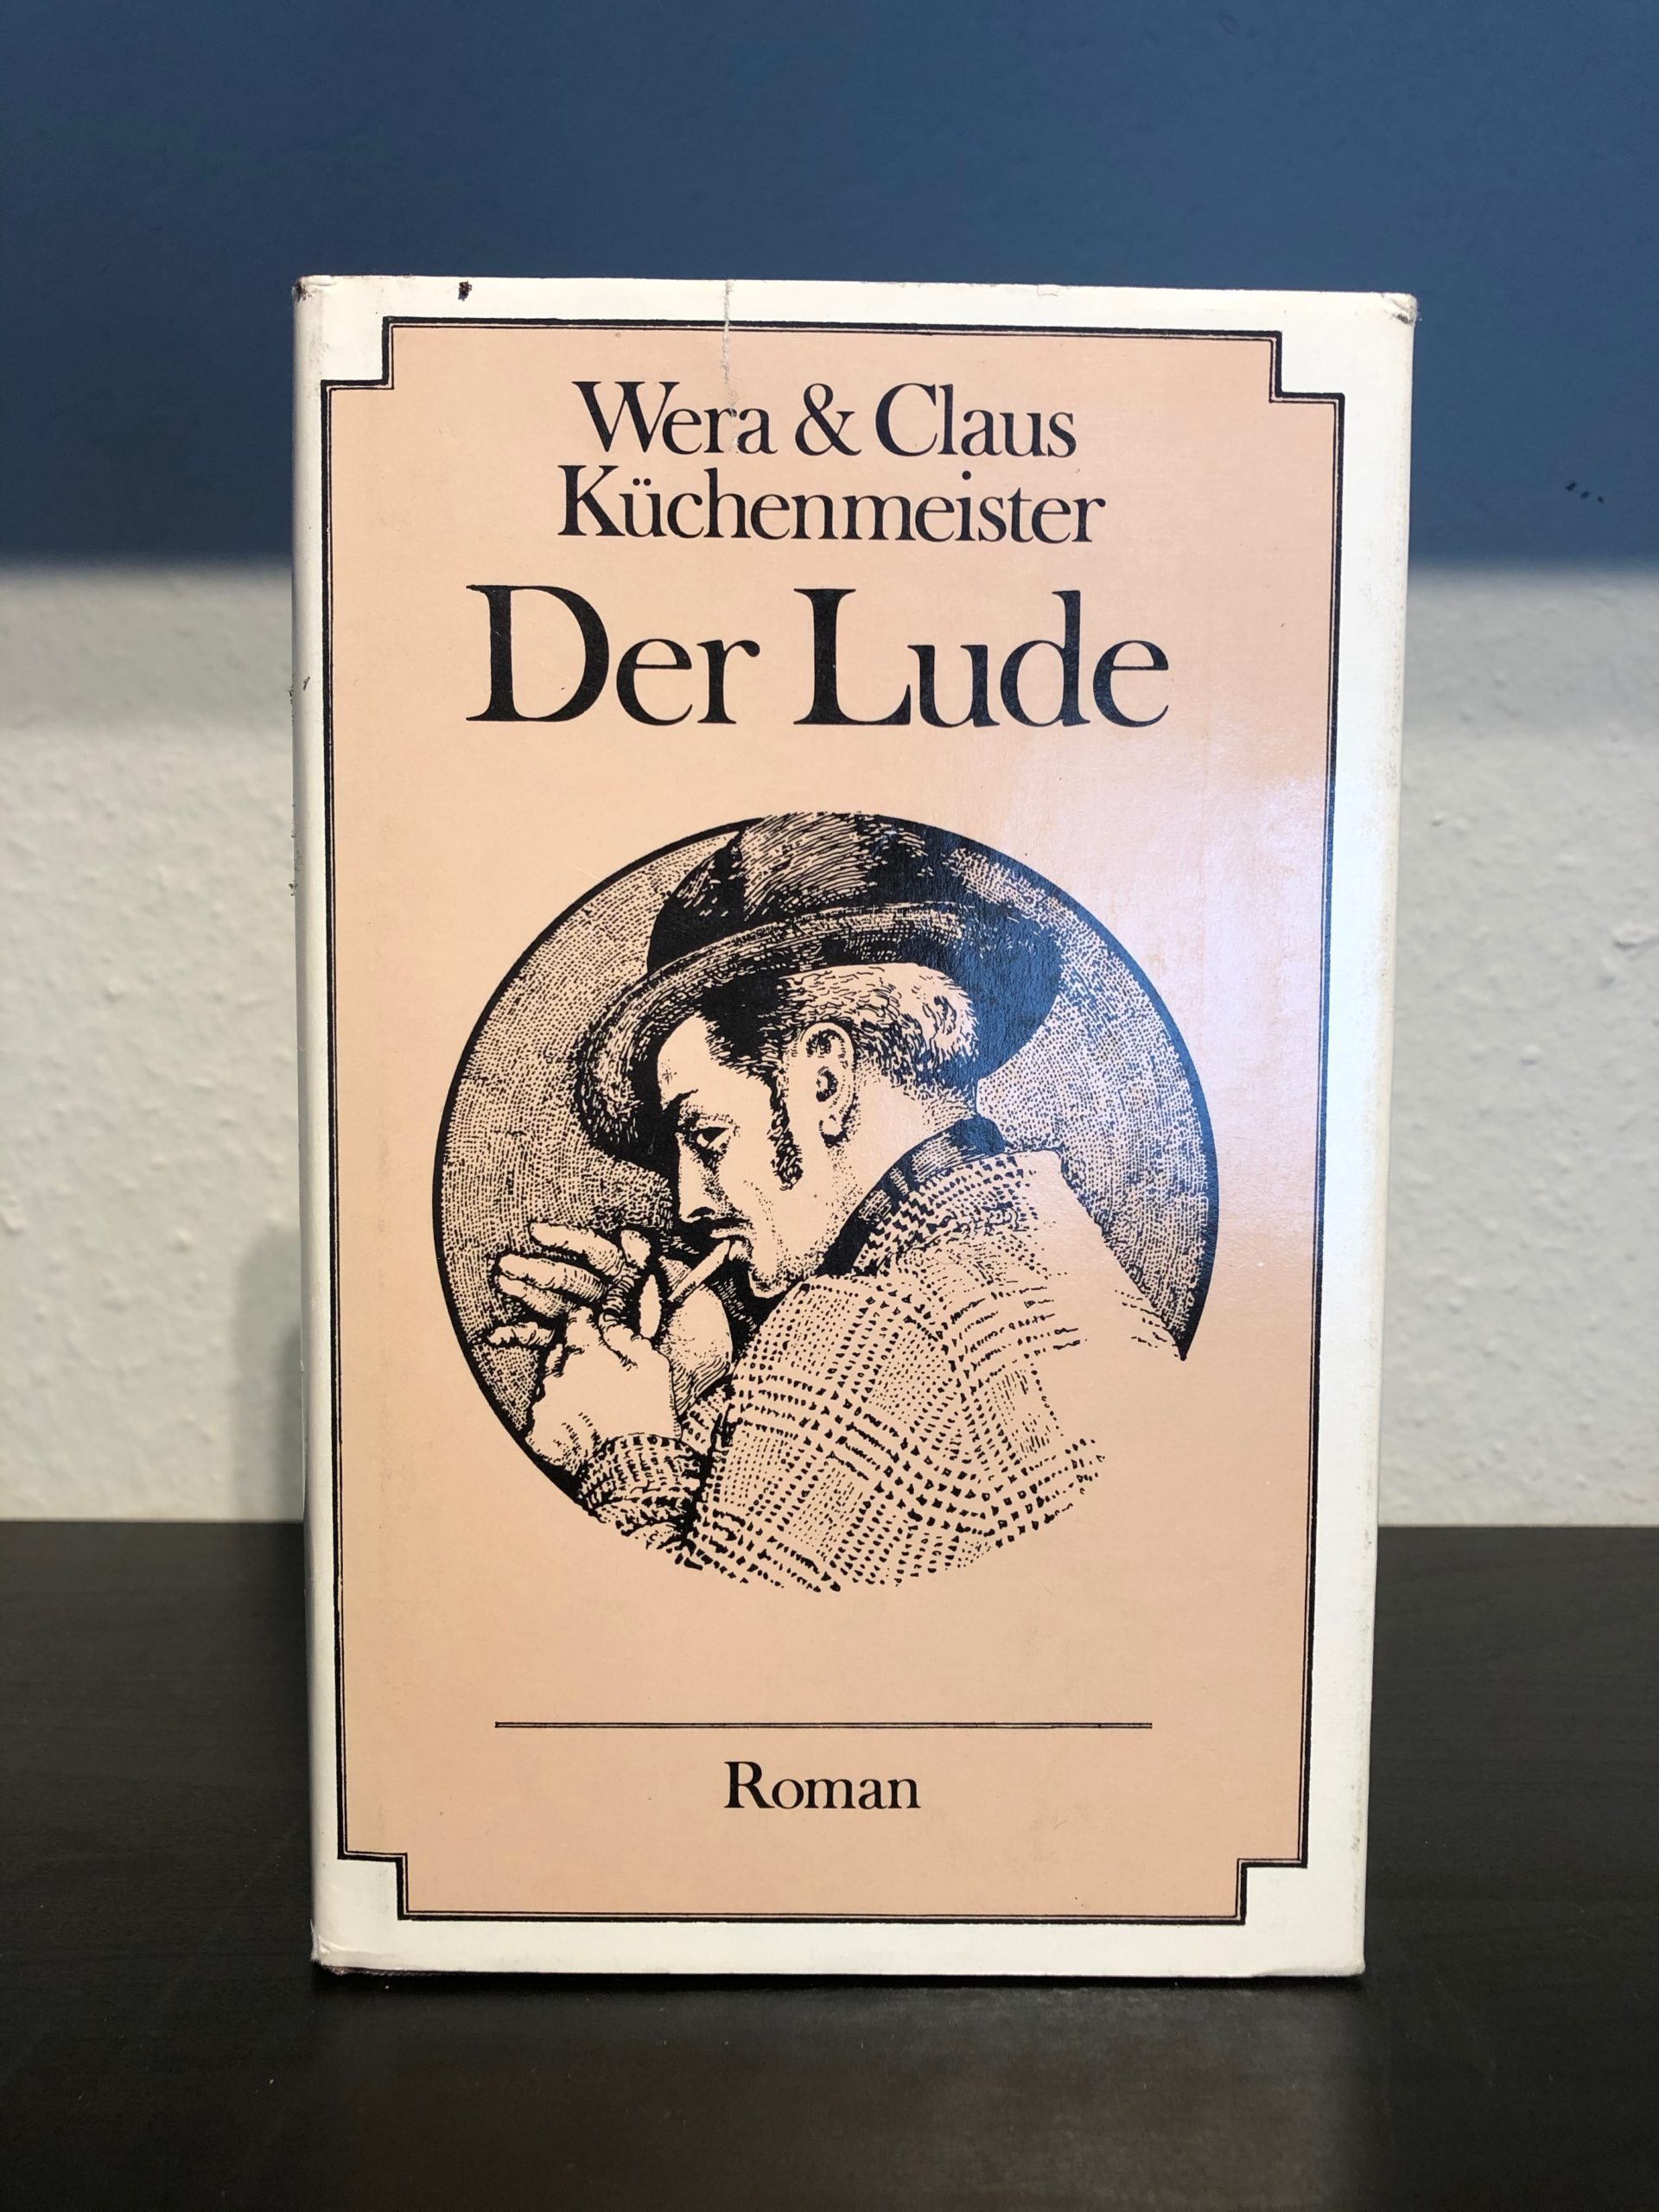 Der Lude - Wera & Claus Küchenmeister main image